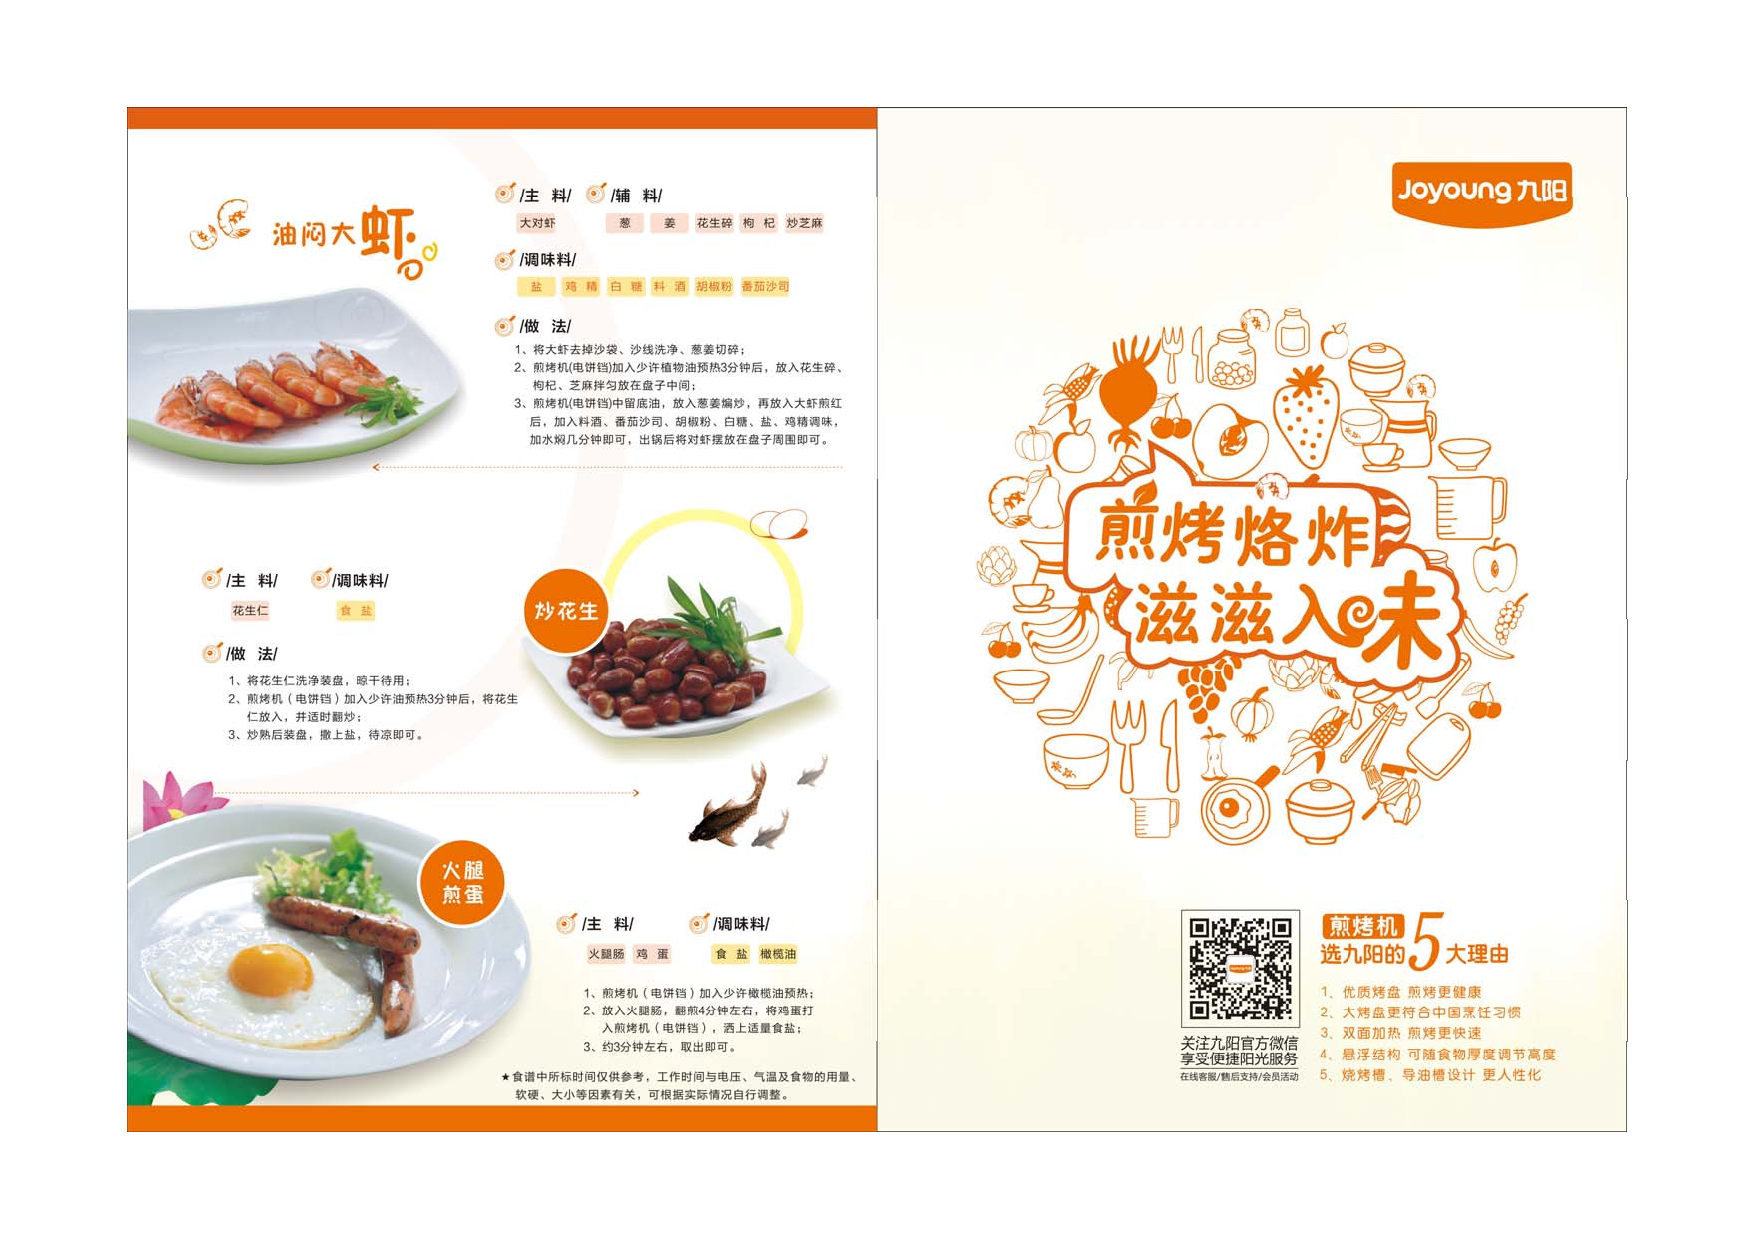 九阳 Joyyoung 煎烤机食谱 使用说明书 封面